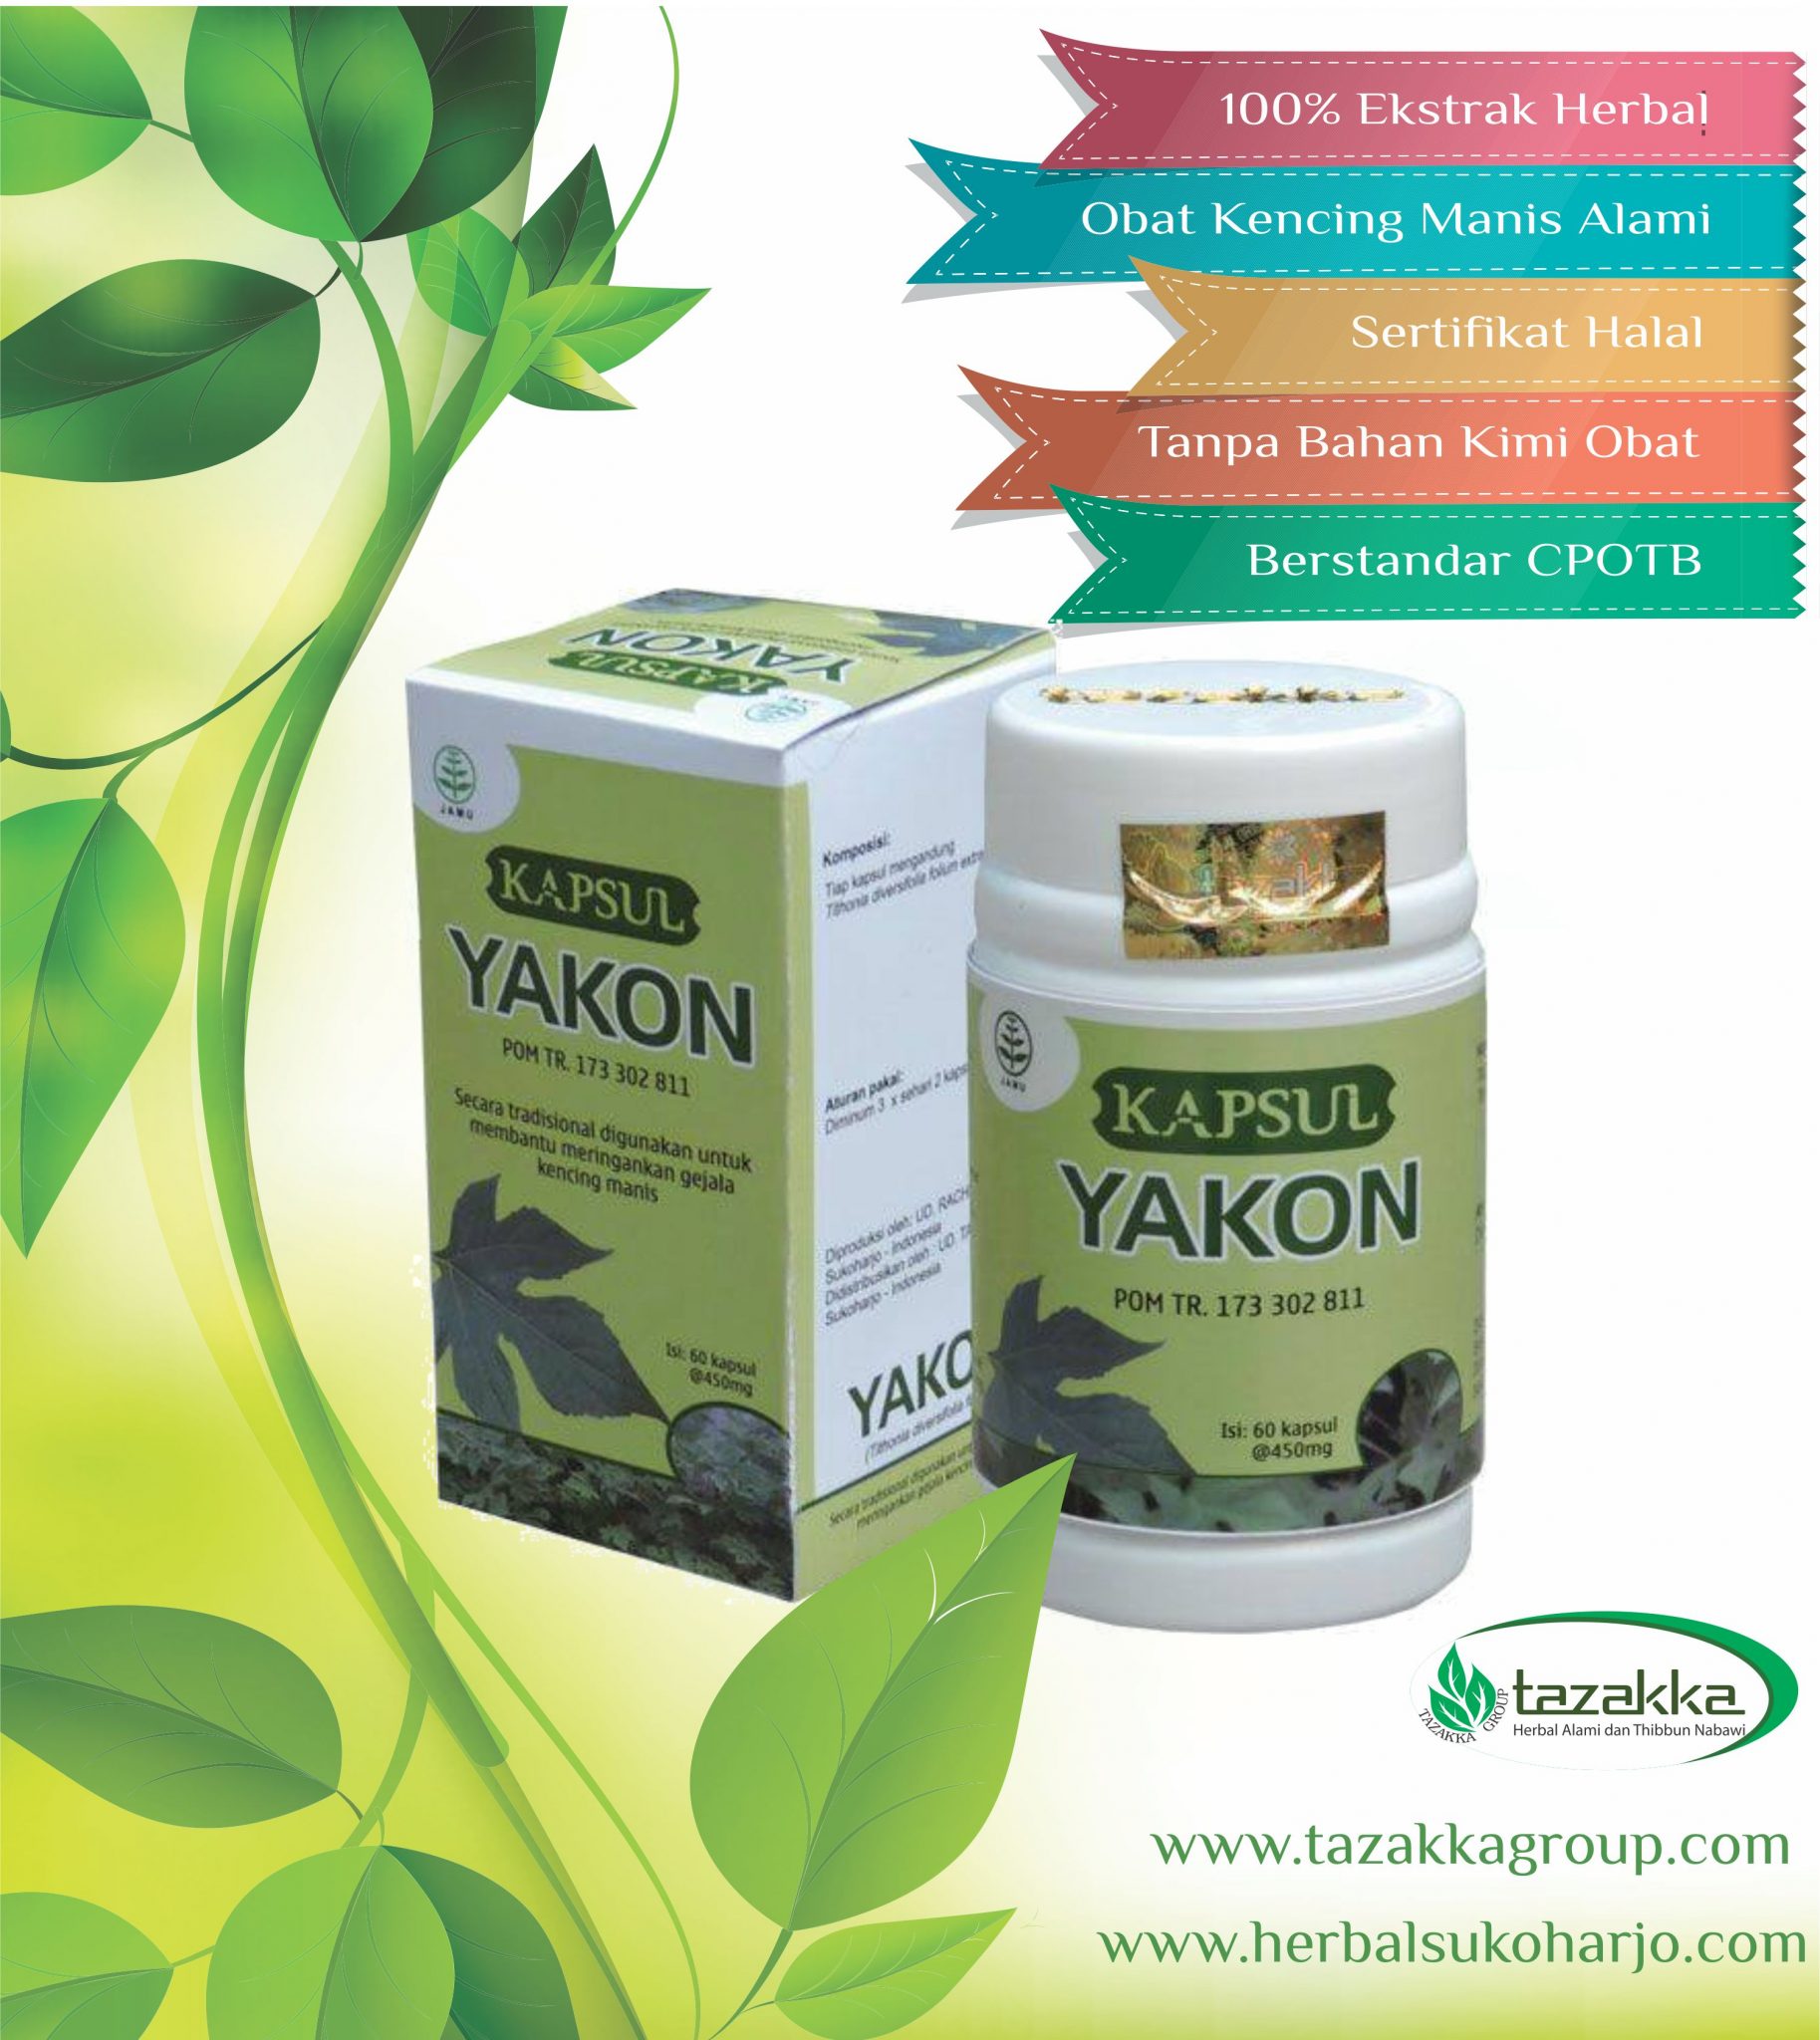 foto gambar produk obat herbal tazakka yang ampuh untuk mengobati penyakit diabetes atau kencing manis dengan herbal yakon daun insulin